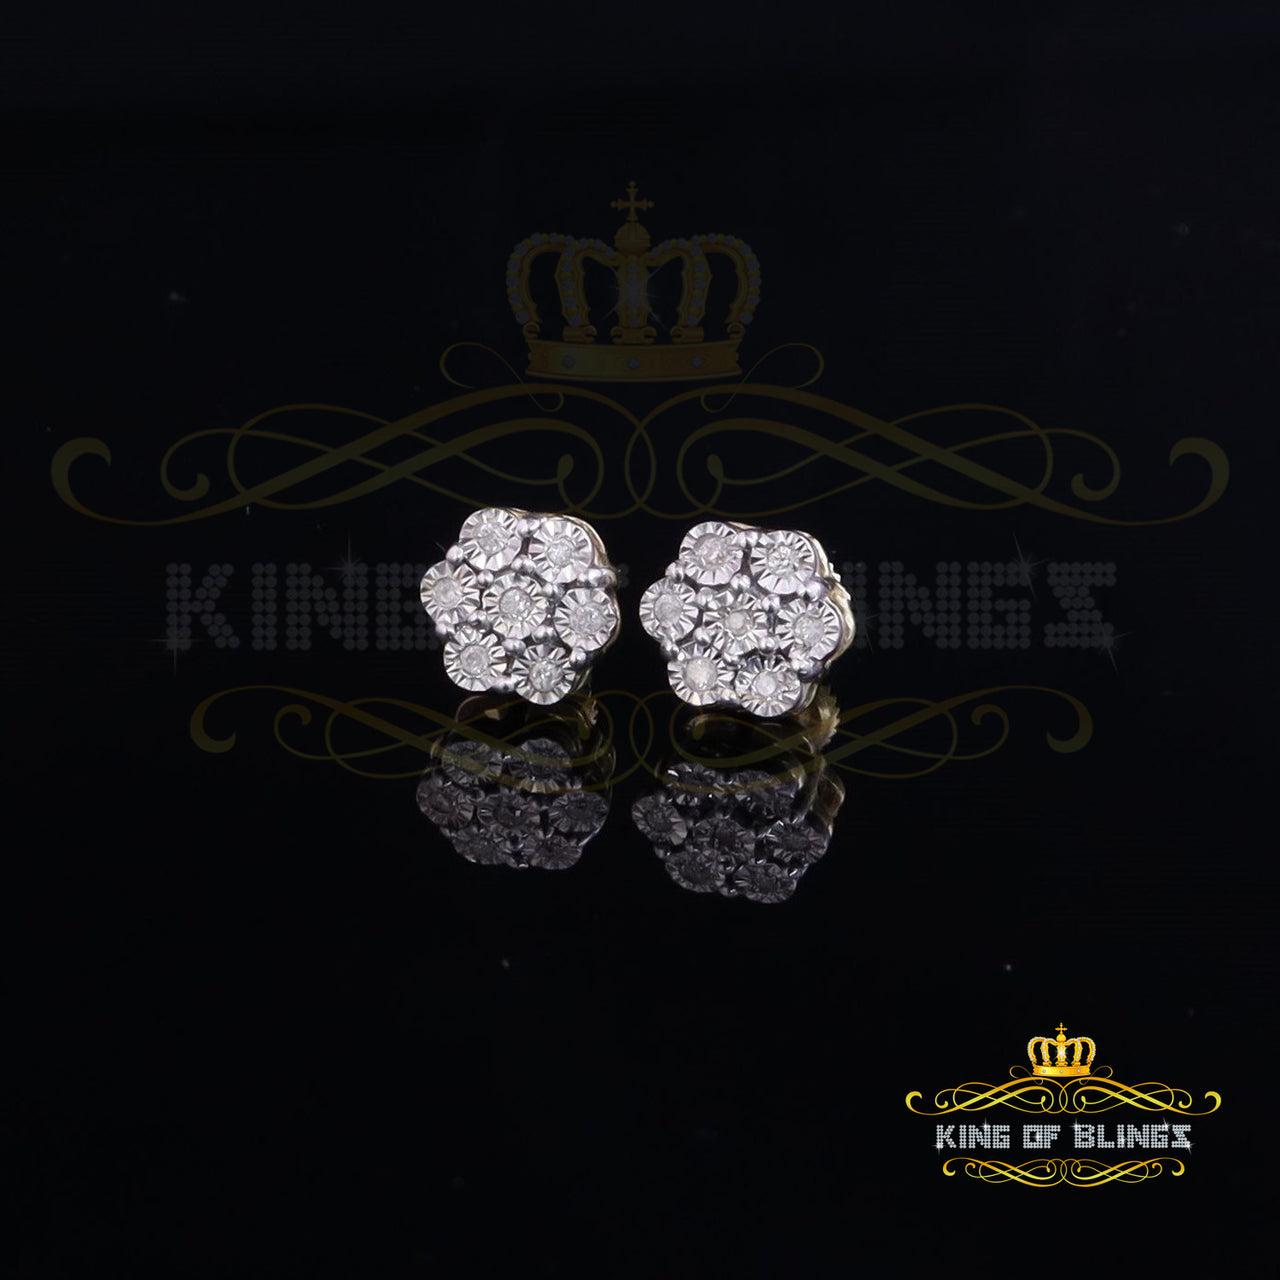 King of Blings-0.05ct Diamond 925 Sterling Silver Yellow Floral Earrings For Men's / Women's KING OF BLINGS